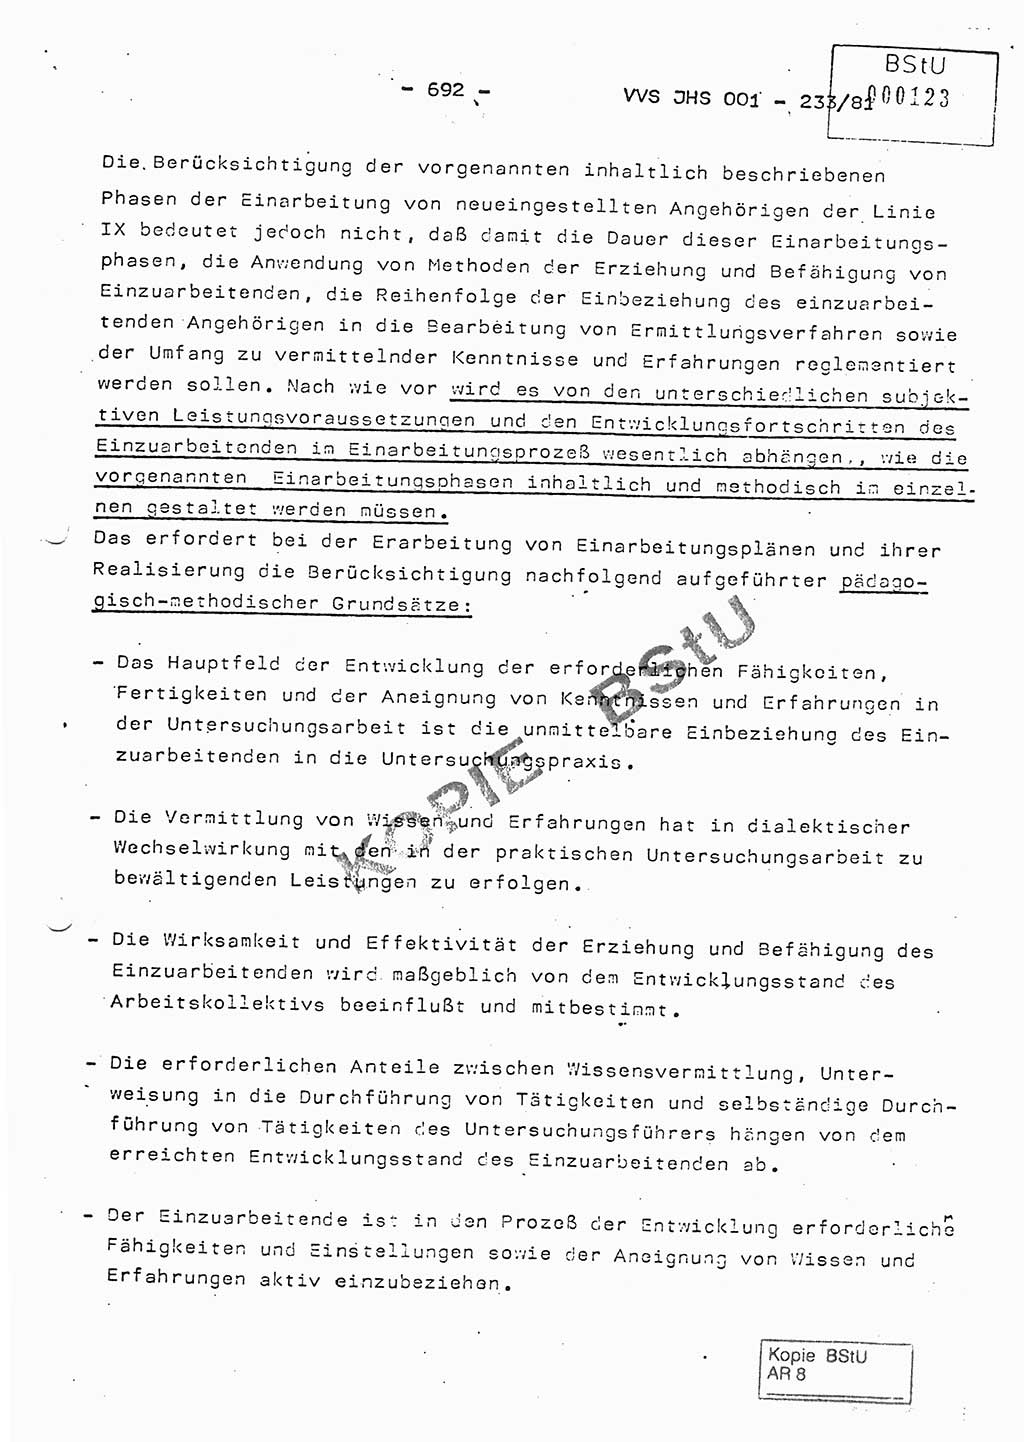 Dissertation Oberstleutnant Horst Zank (JHS), Oberstleutnant Dr. Karl-Heinz Knoblauch (JHS), Oberstleutnant Gustav-Adolf Kowalewski (HA Ⅸ), Oberstleutnant Wolfgang Plötner (HA Ⅸ), Ministerium für Staatssicherheit (MfS) [Deutsche Demokratische Republik (DDR)], Juristische Hochschule (JHS), Vertrauliche Verschlußsache (VVS) o001-233/81, Potsdam 1981, Blatt 692 (Diss. MfS DDR JHS VVS o001-233/81 1981, Bl. 692)